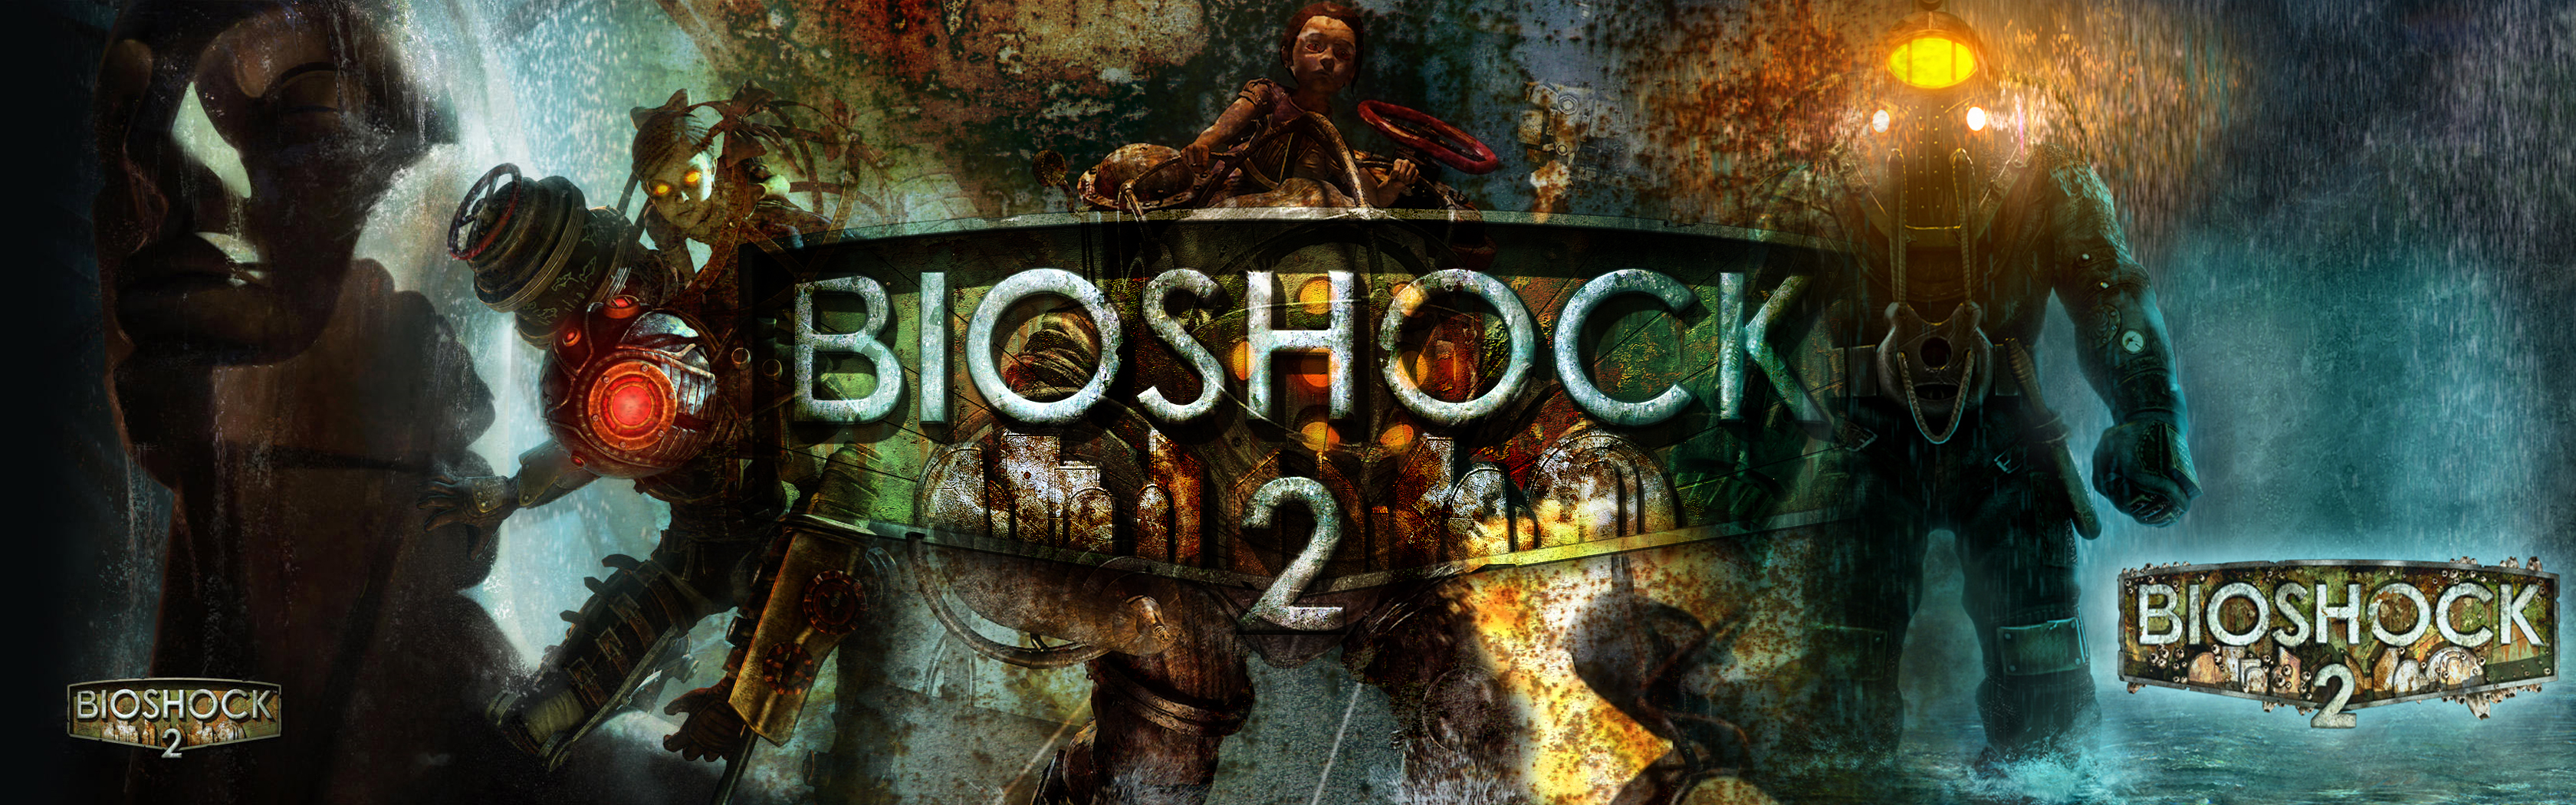 204750 descargar imagen videojuego, bioshock 2, bioshock: fondos de pantalla y protectores de pantalla gratis